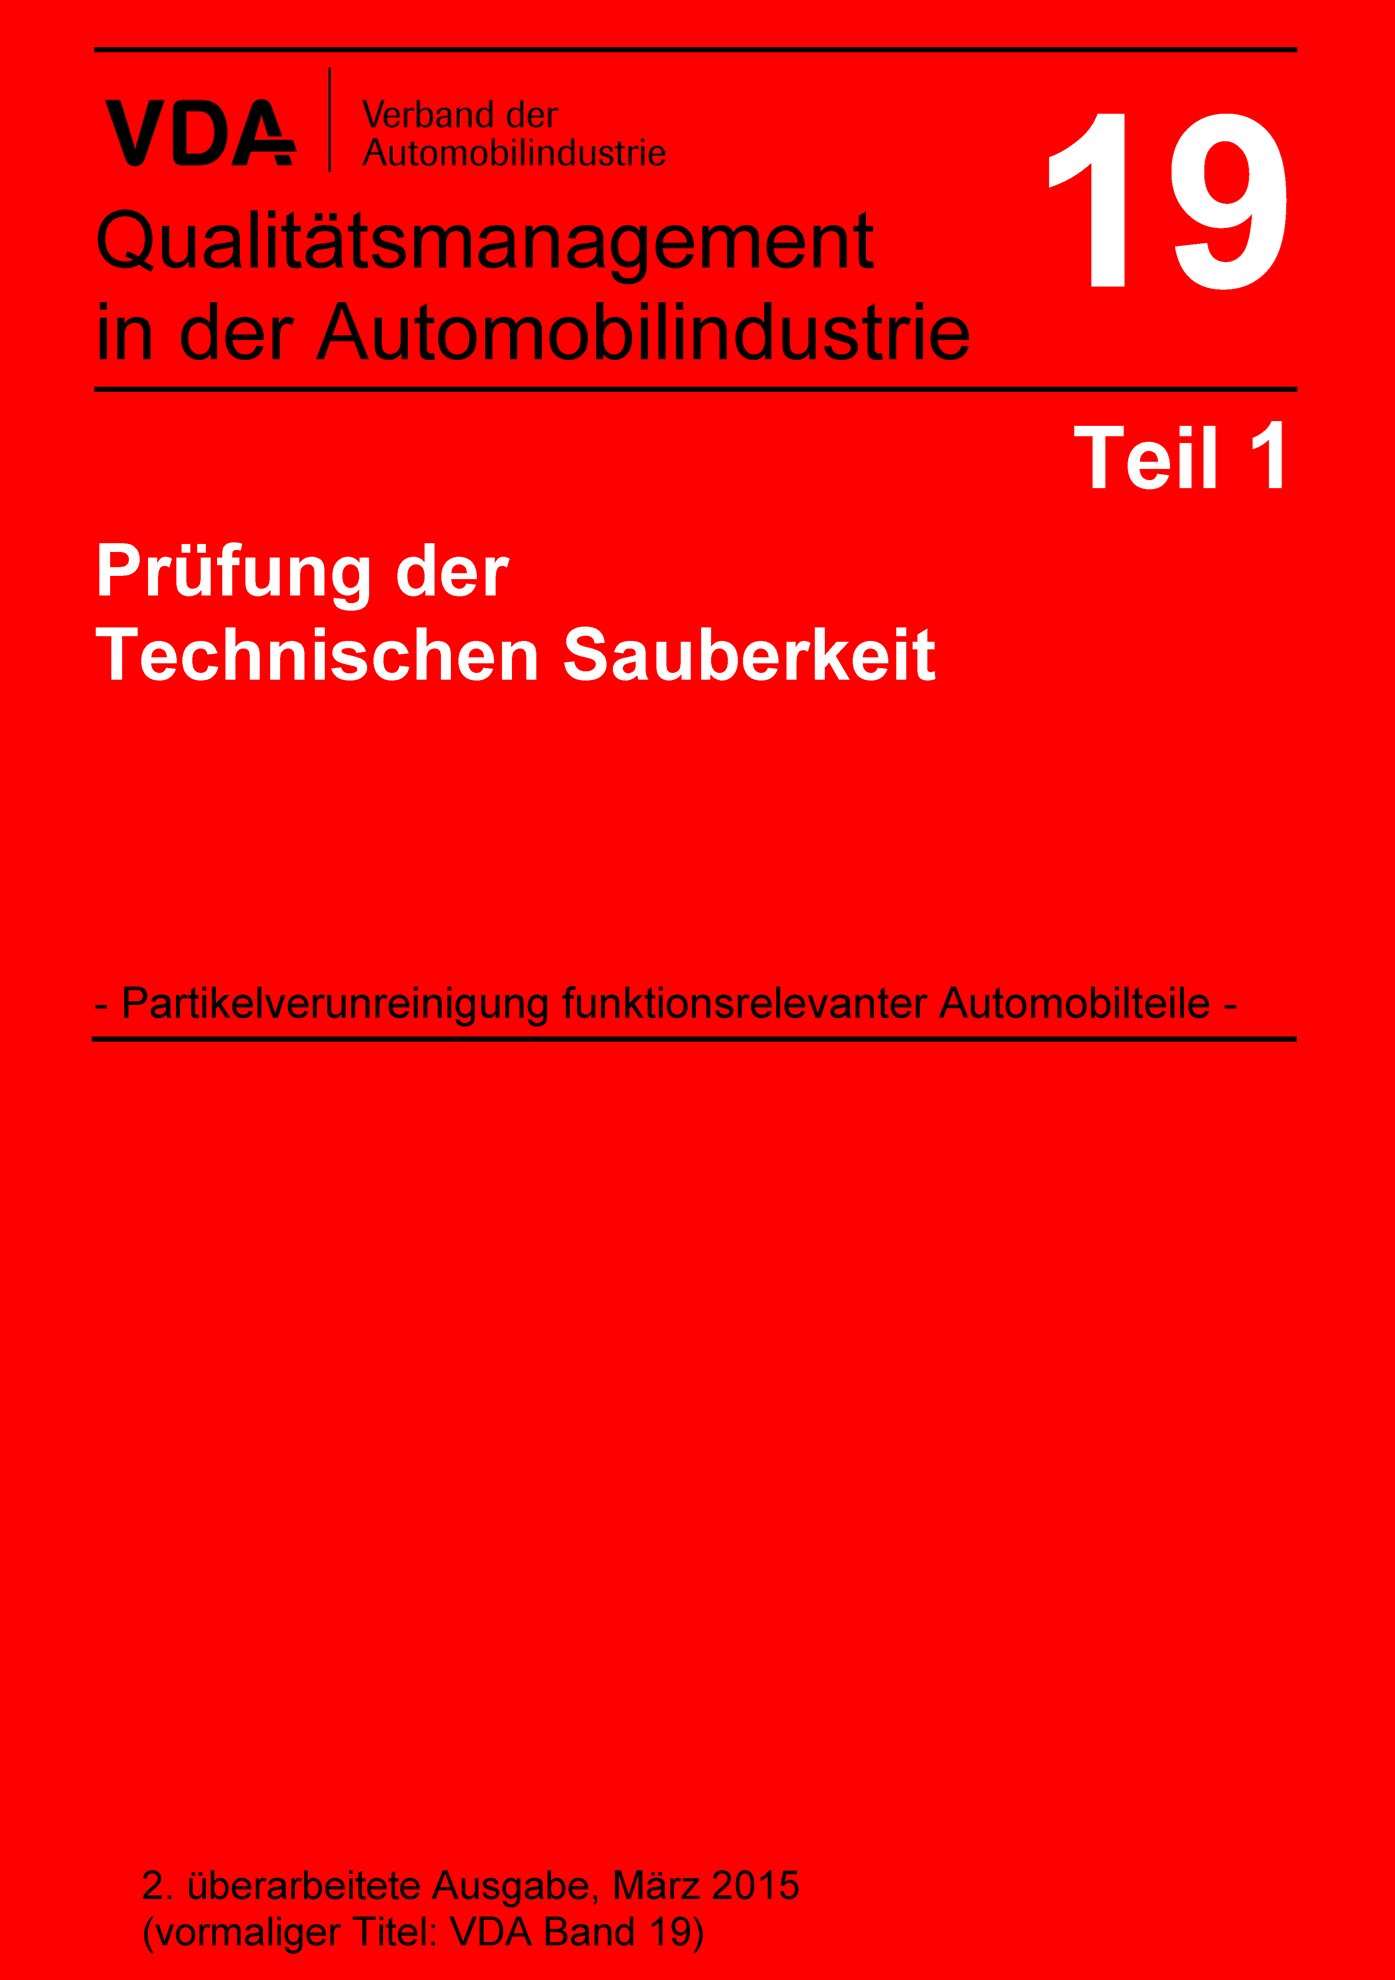 Publikation  VDA Band 19 Teil 1 Prüfung der Technischen Sauberkeit - Partikelverunreinigung funktionsrelevanter Automobilteile / 2. überarbeitete Ausgabe, März 2015 (vormaliger Titel VDA Band 19) 1.3.2015 Ansicht